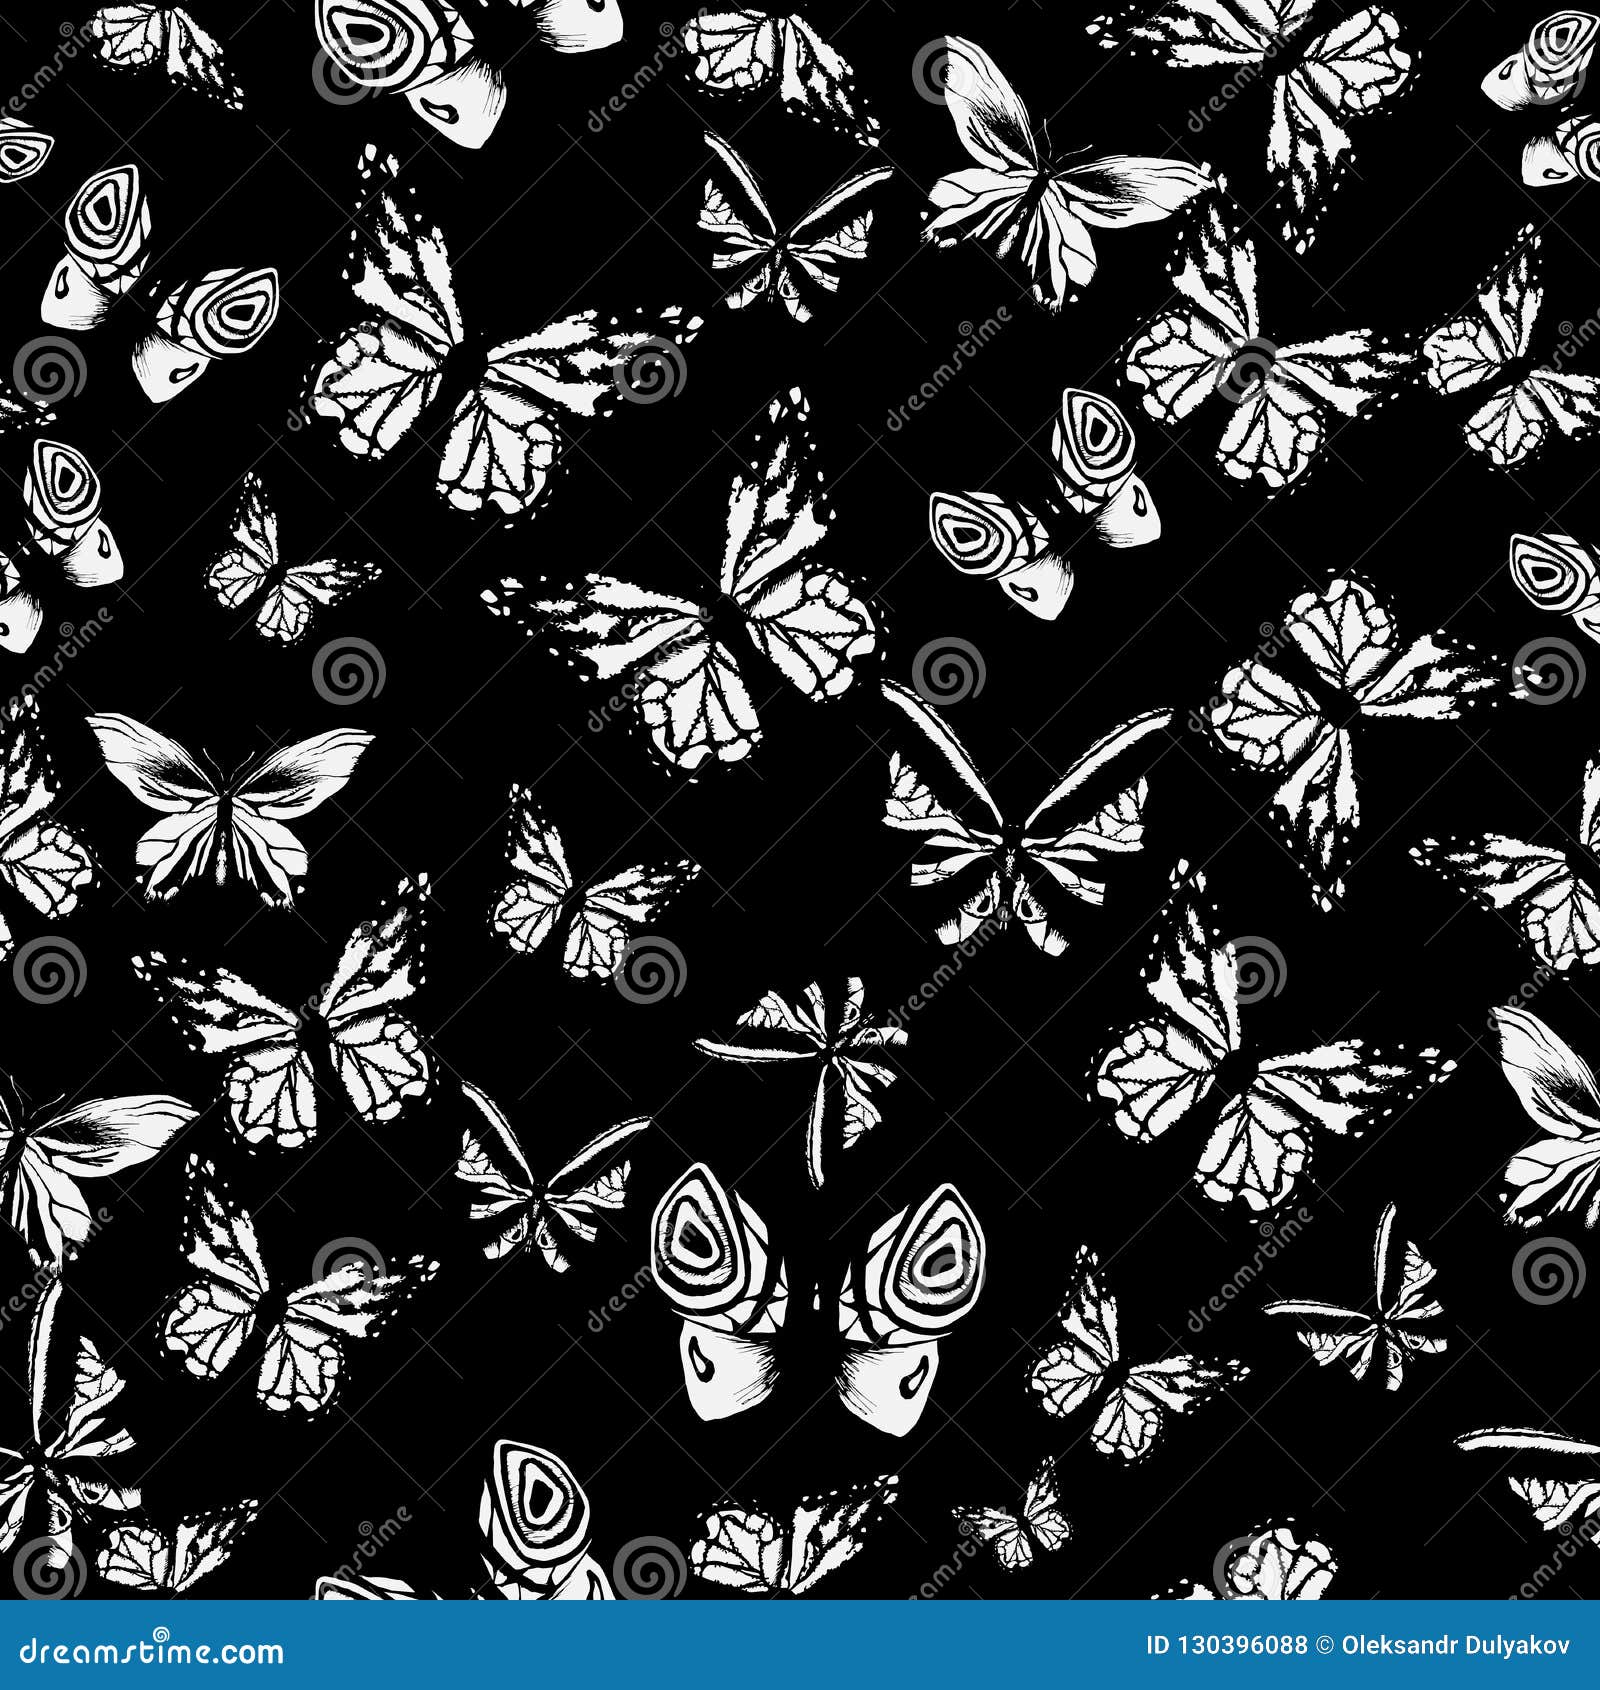 Butterfly aesthetic black HD wallpapers  Pxfuel